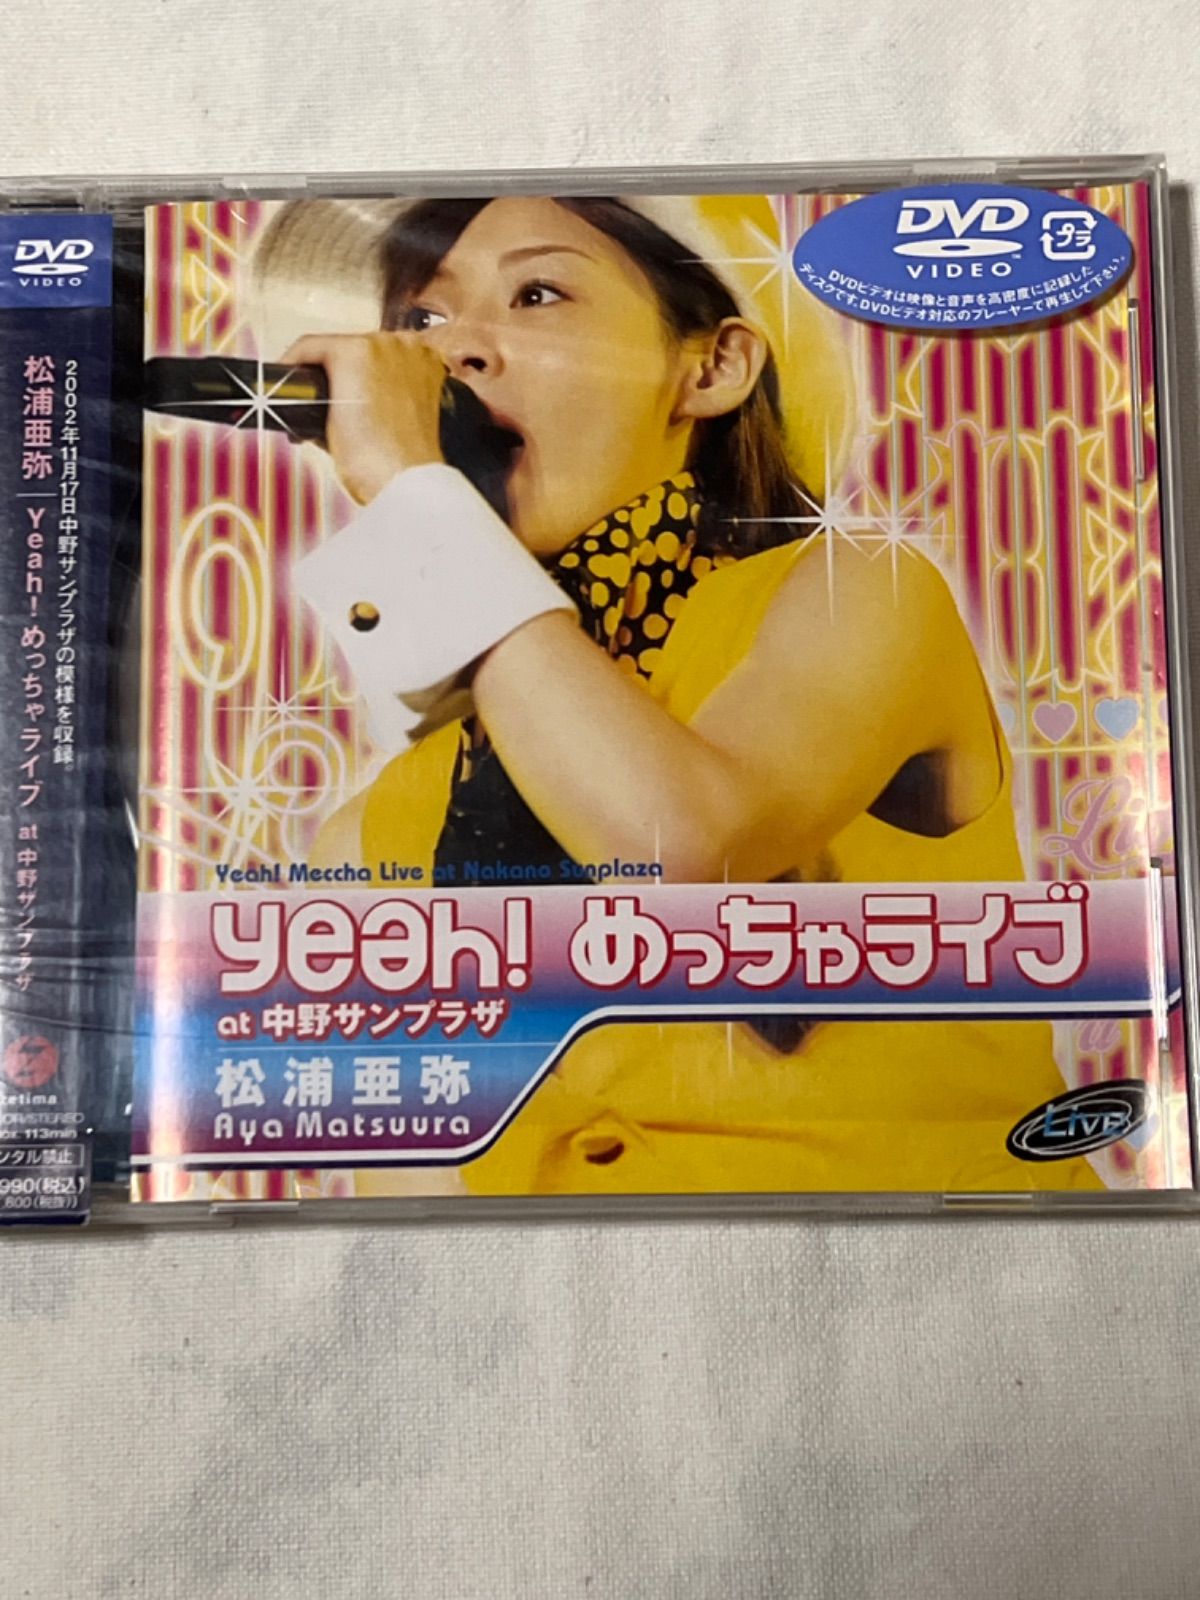 松浦亜弥 マニアックライブvol.4 ハロプロ DVDトレカ - ミュージック